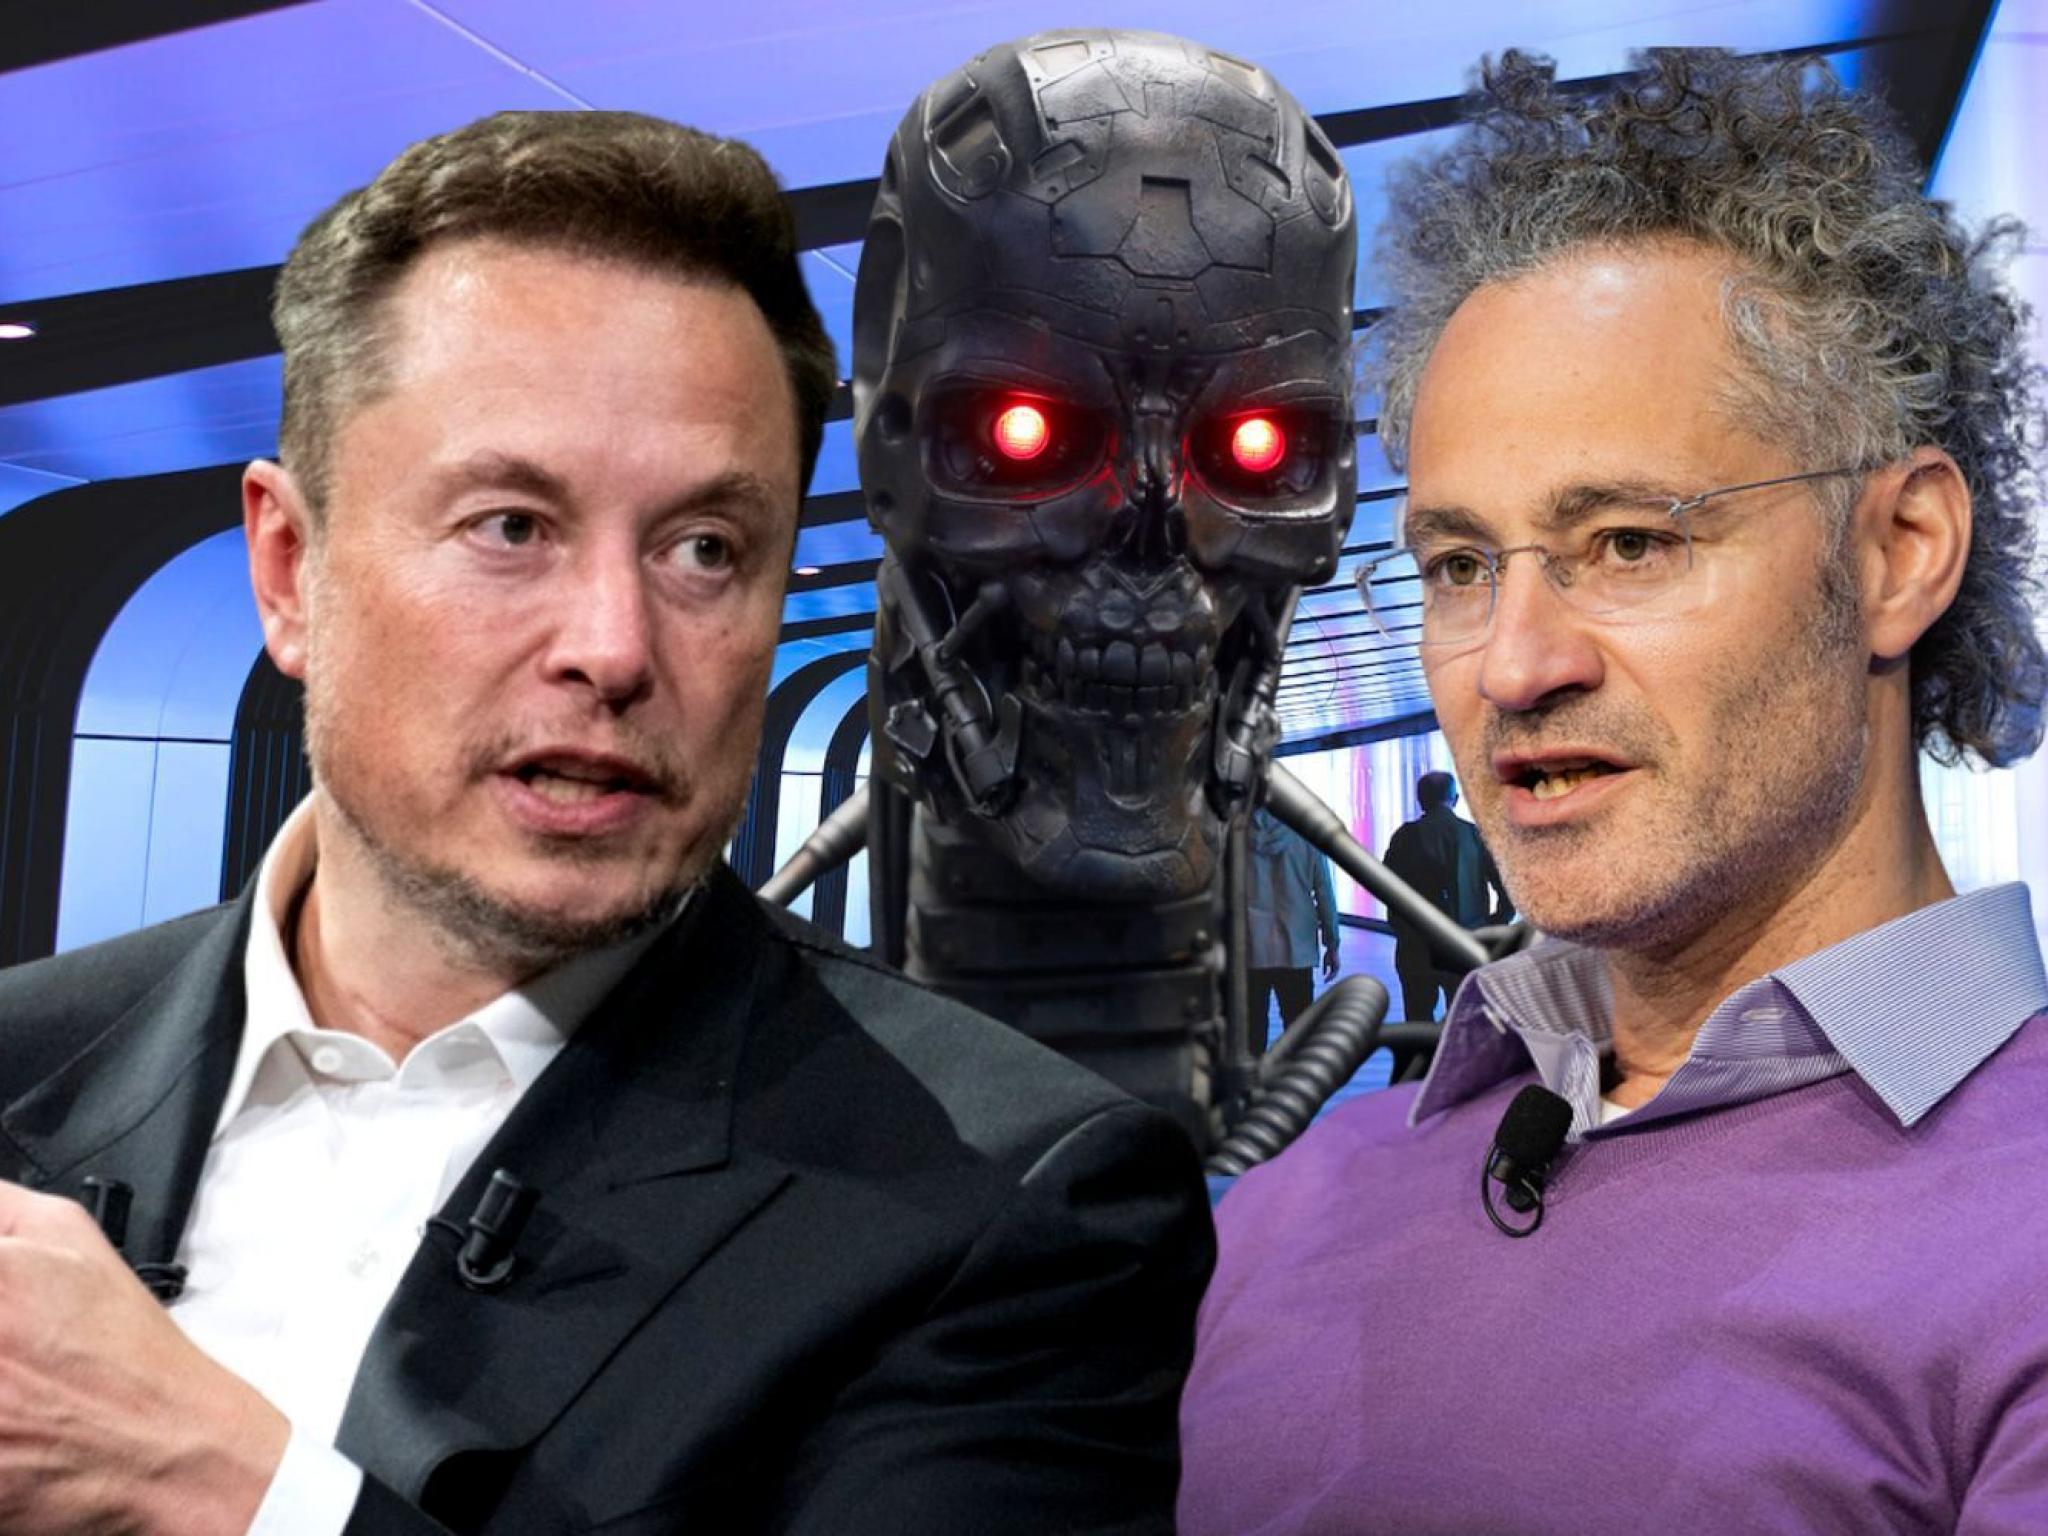 Alex Karp, PDG de Palantir, et Elon Musk, PDG de Tesla, partagent leurs inquiétudes sur les risques de l'IA pour l'humanité - Goliaths actualités boursière